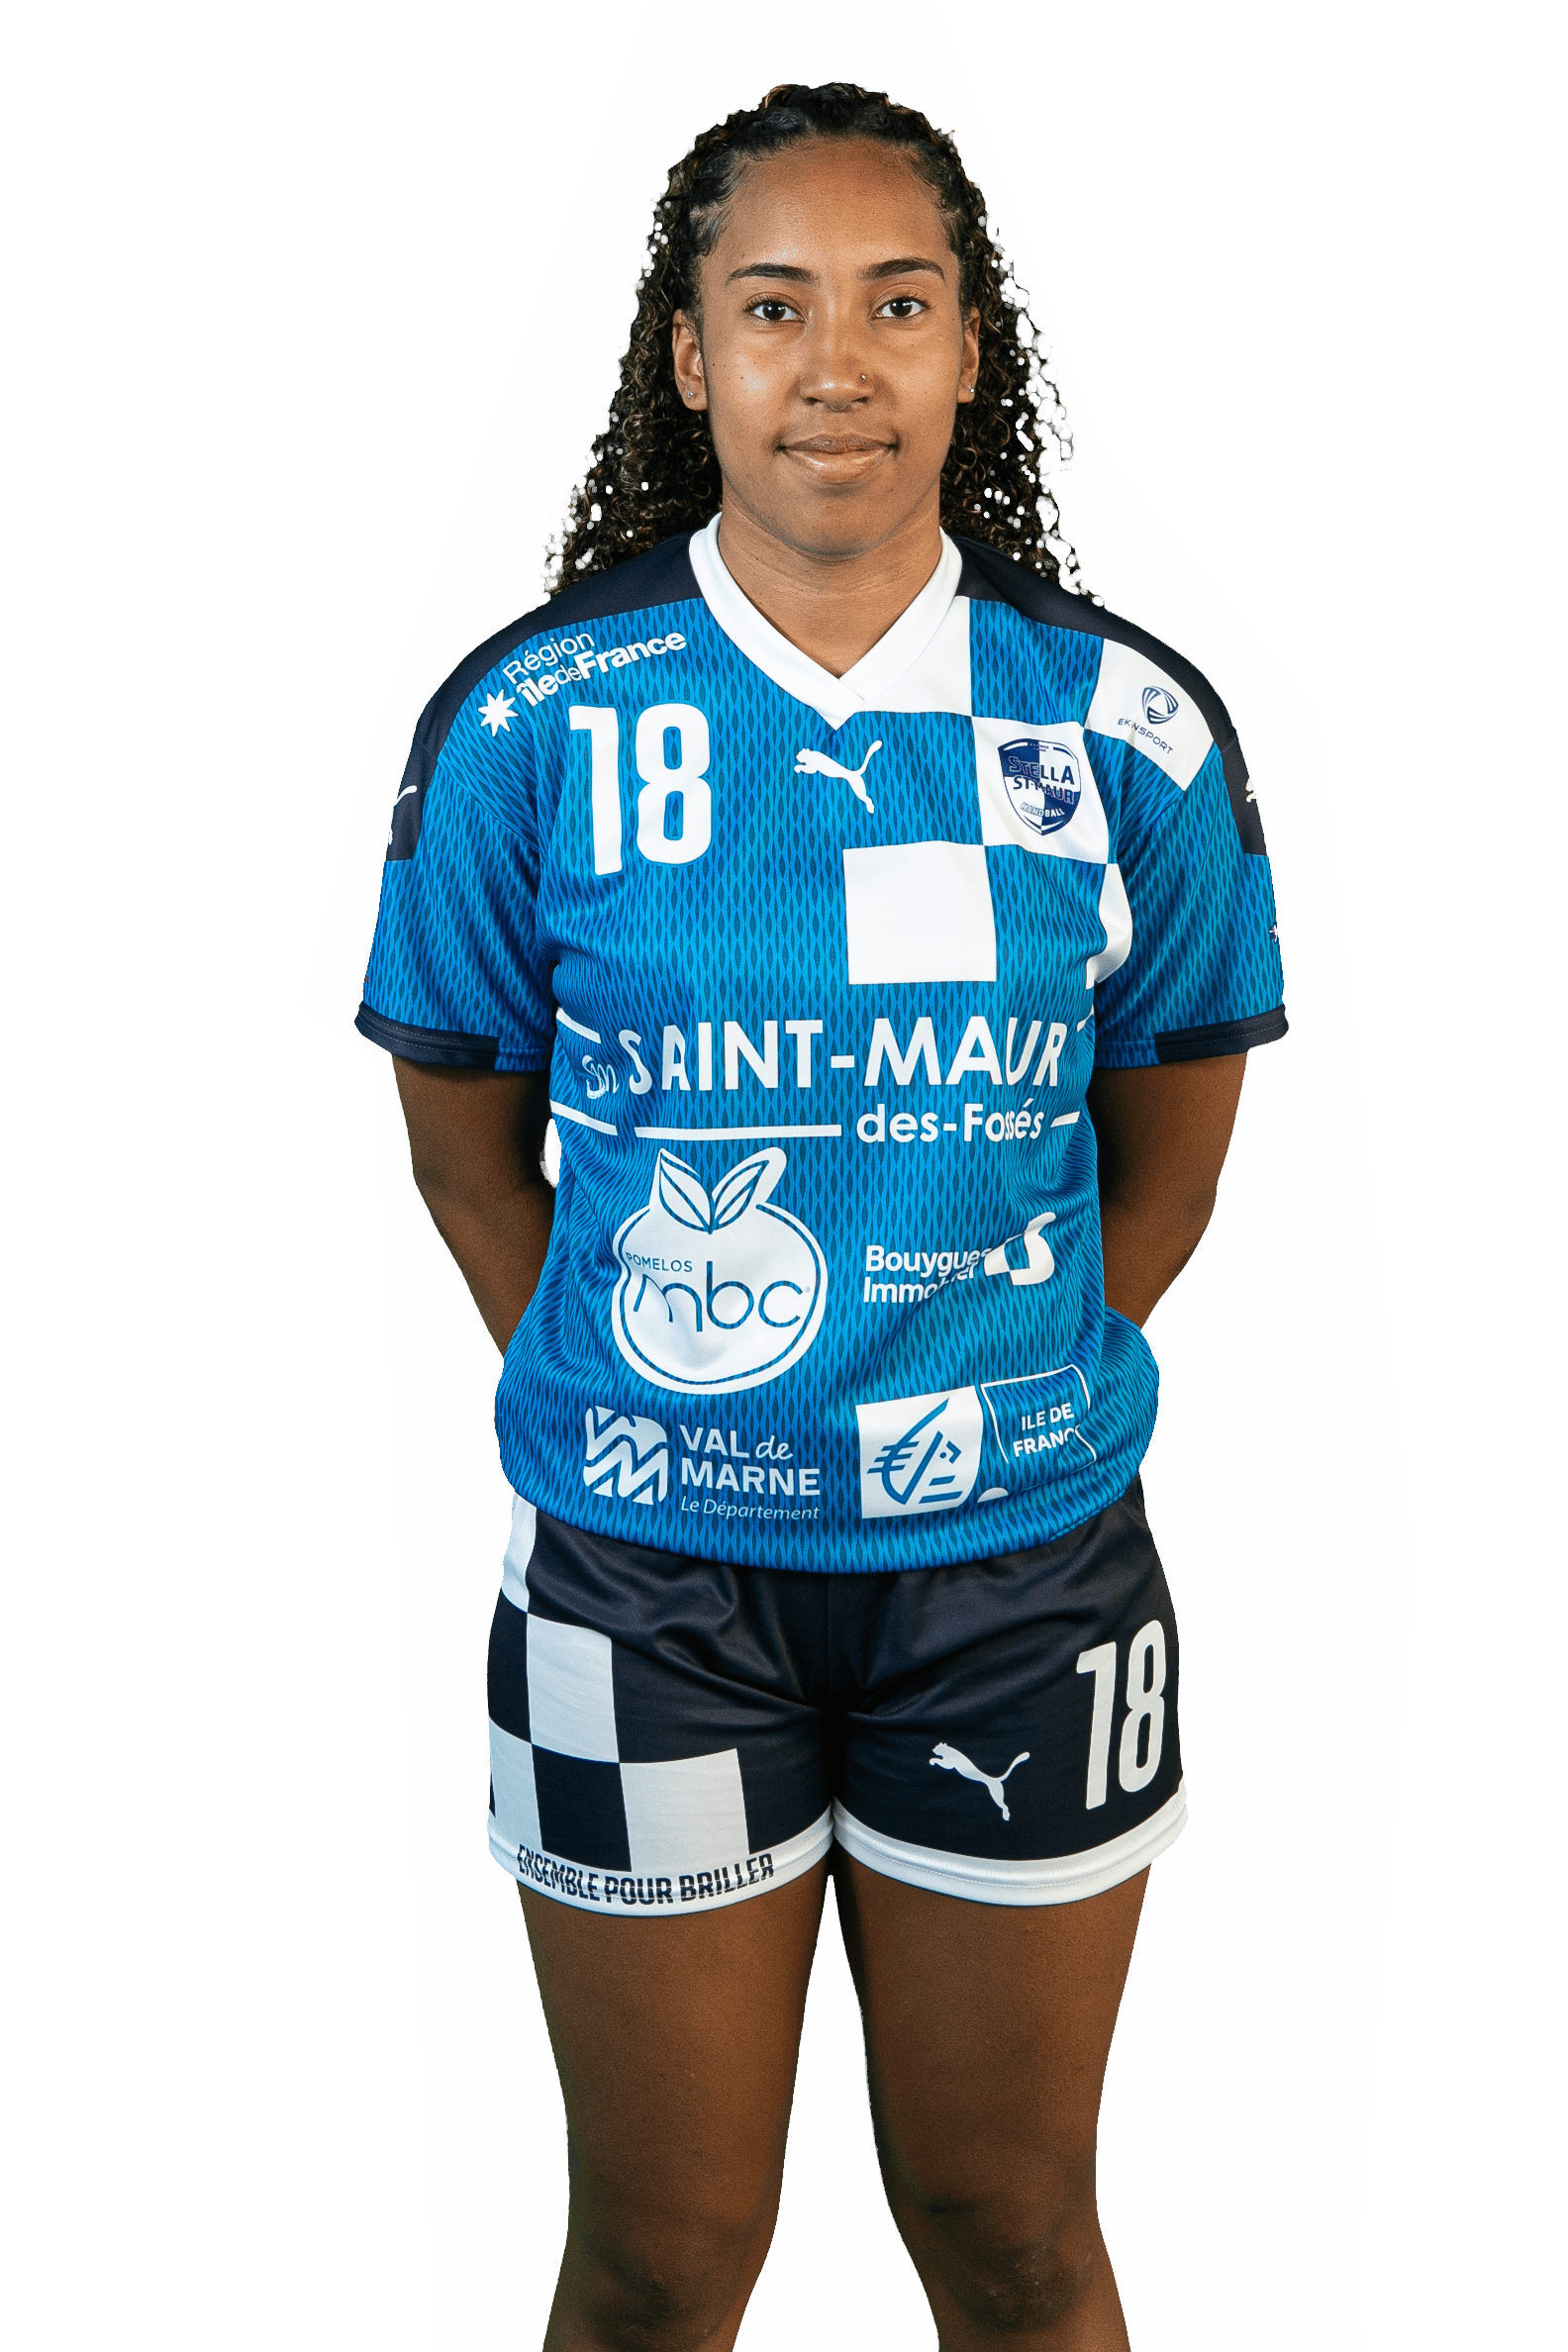 maurine-semerle - Arrière gauche division 2 féminine de handball de Stella St-Maur Handball